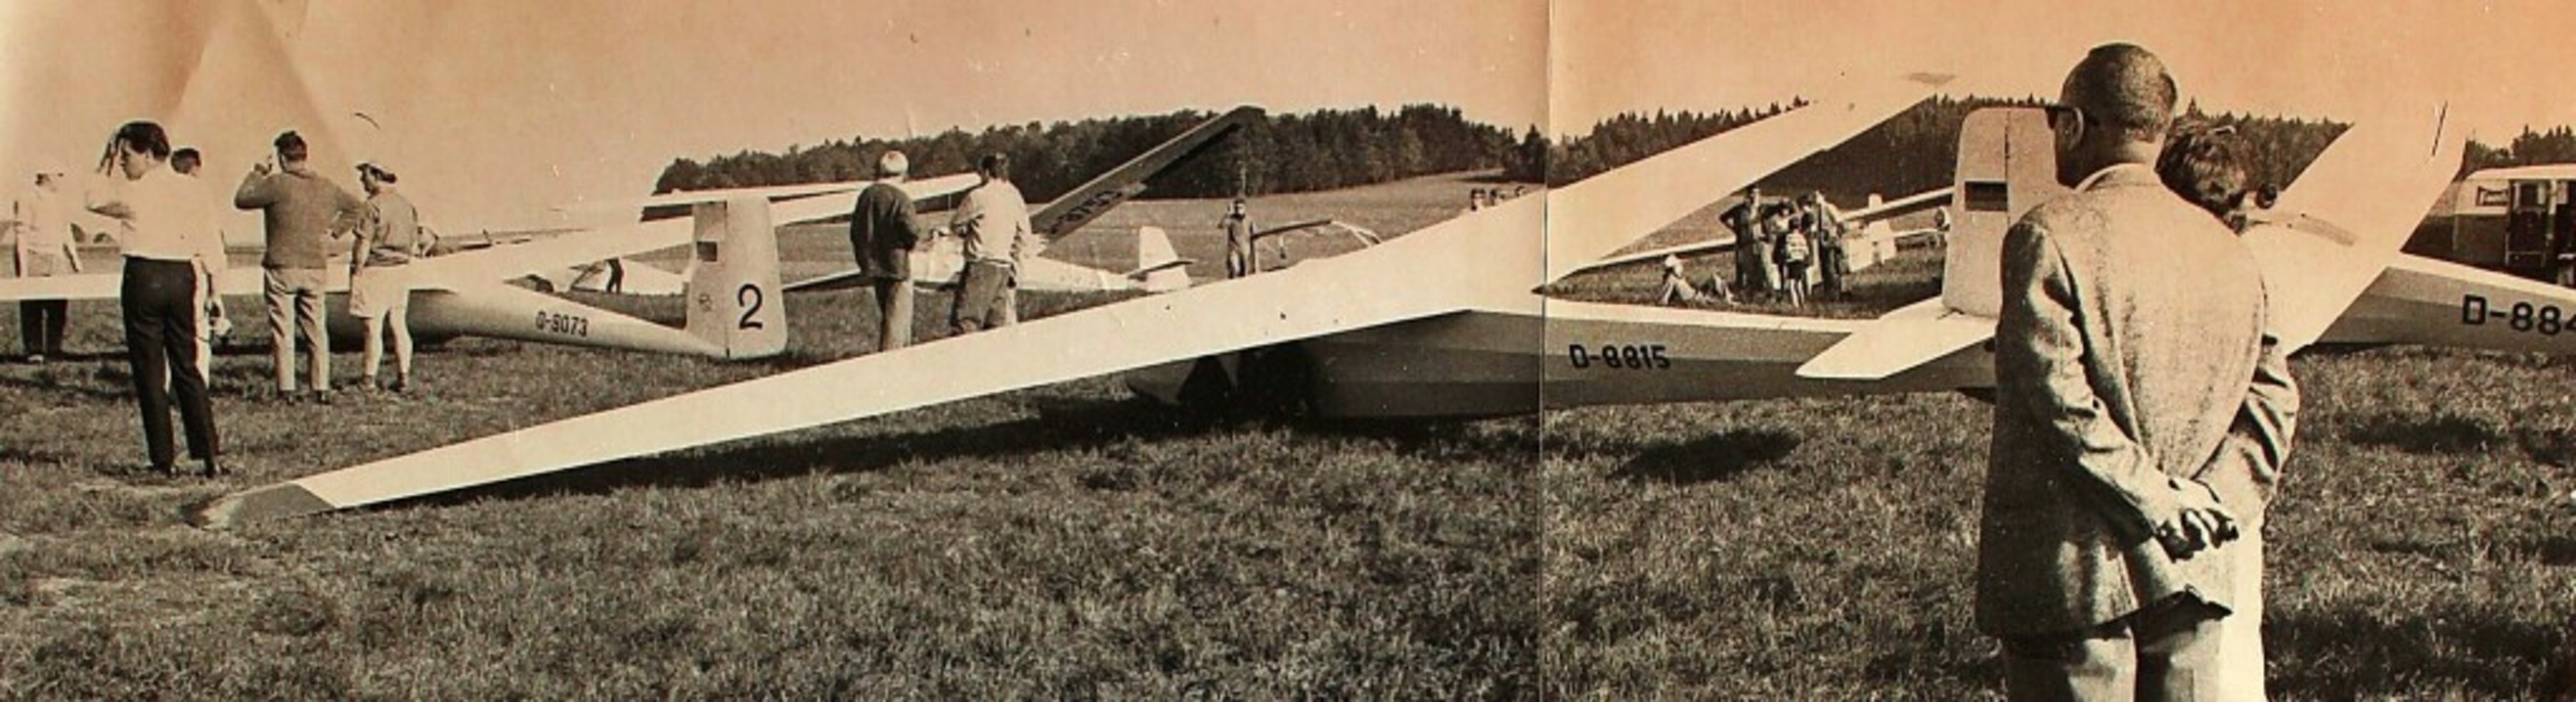 Früher waren es Segelflugzeuge, die im...s Interesses von Flugschauen standen.   | Foto: Hansjörg Bader